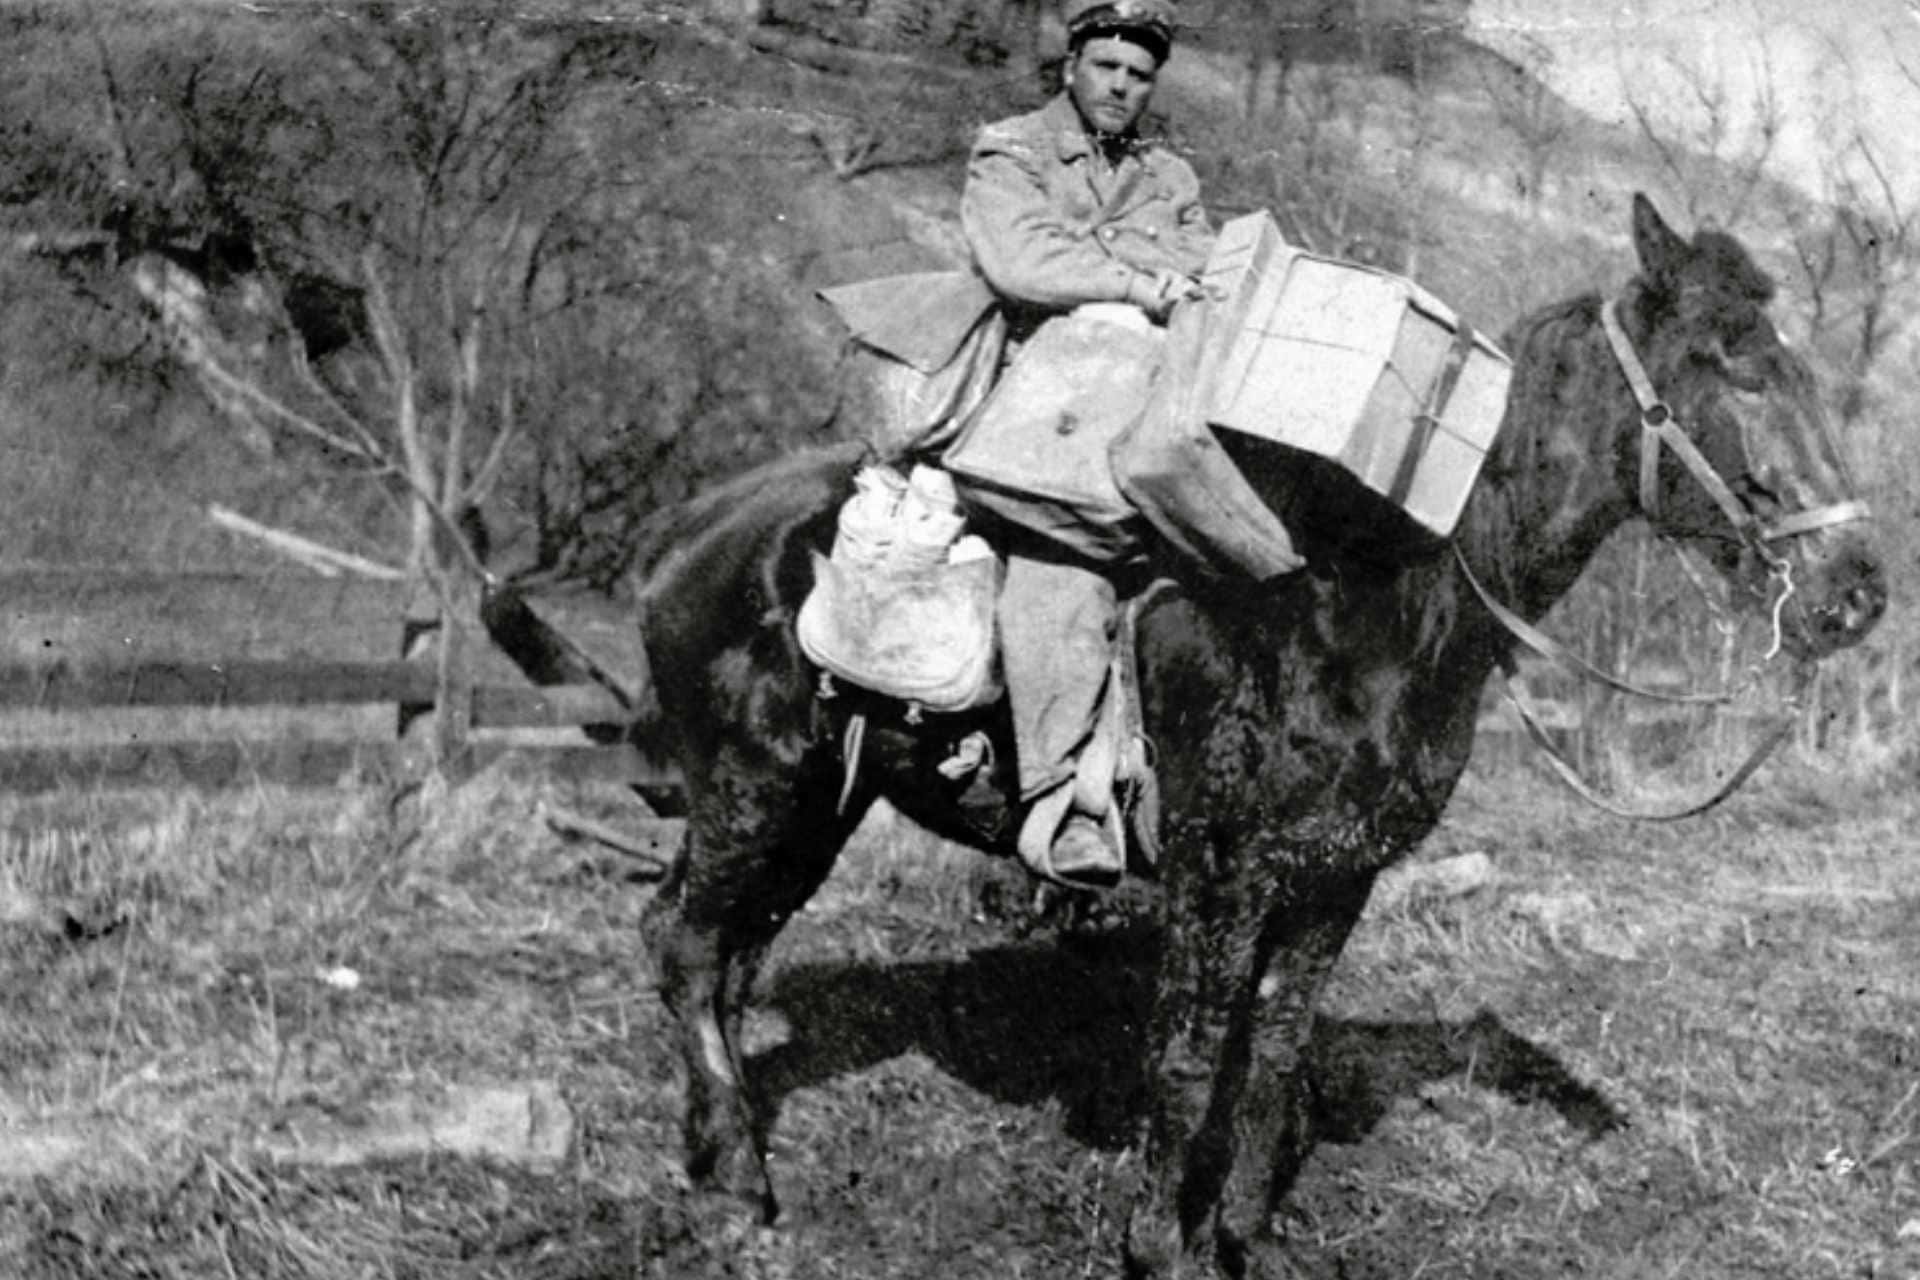 Rural mail delivery on horseback.